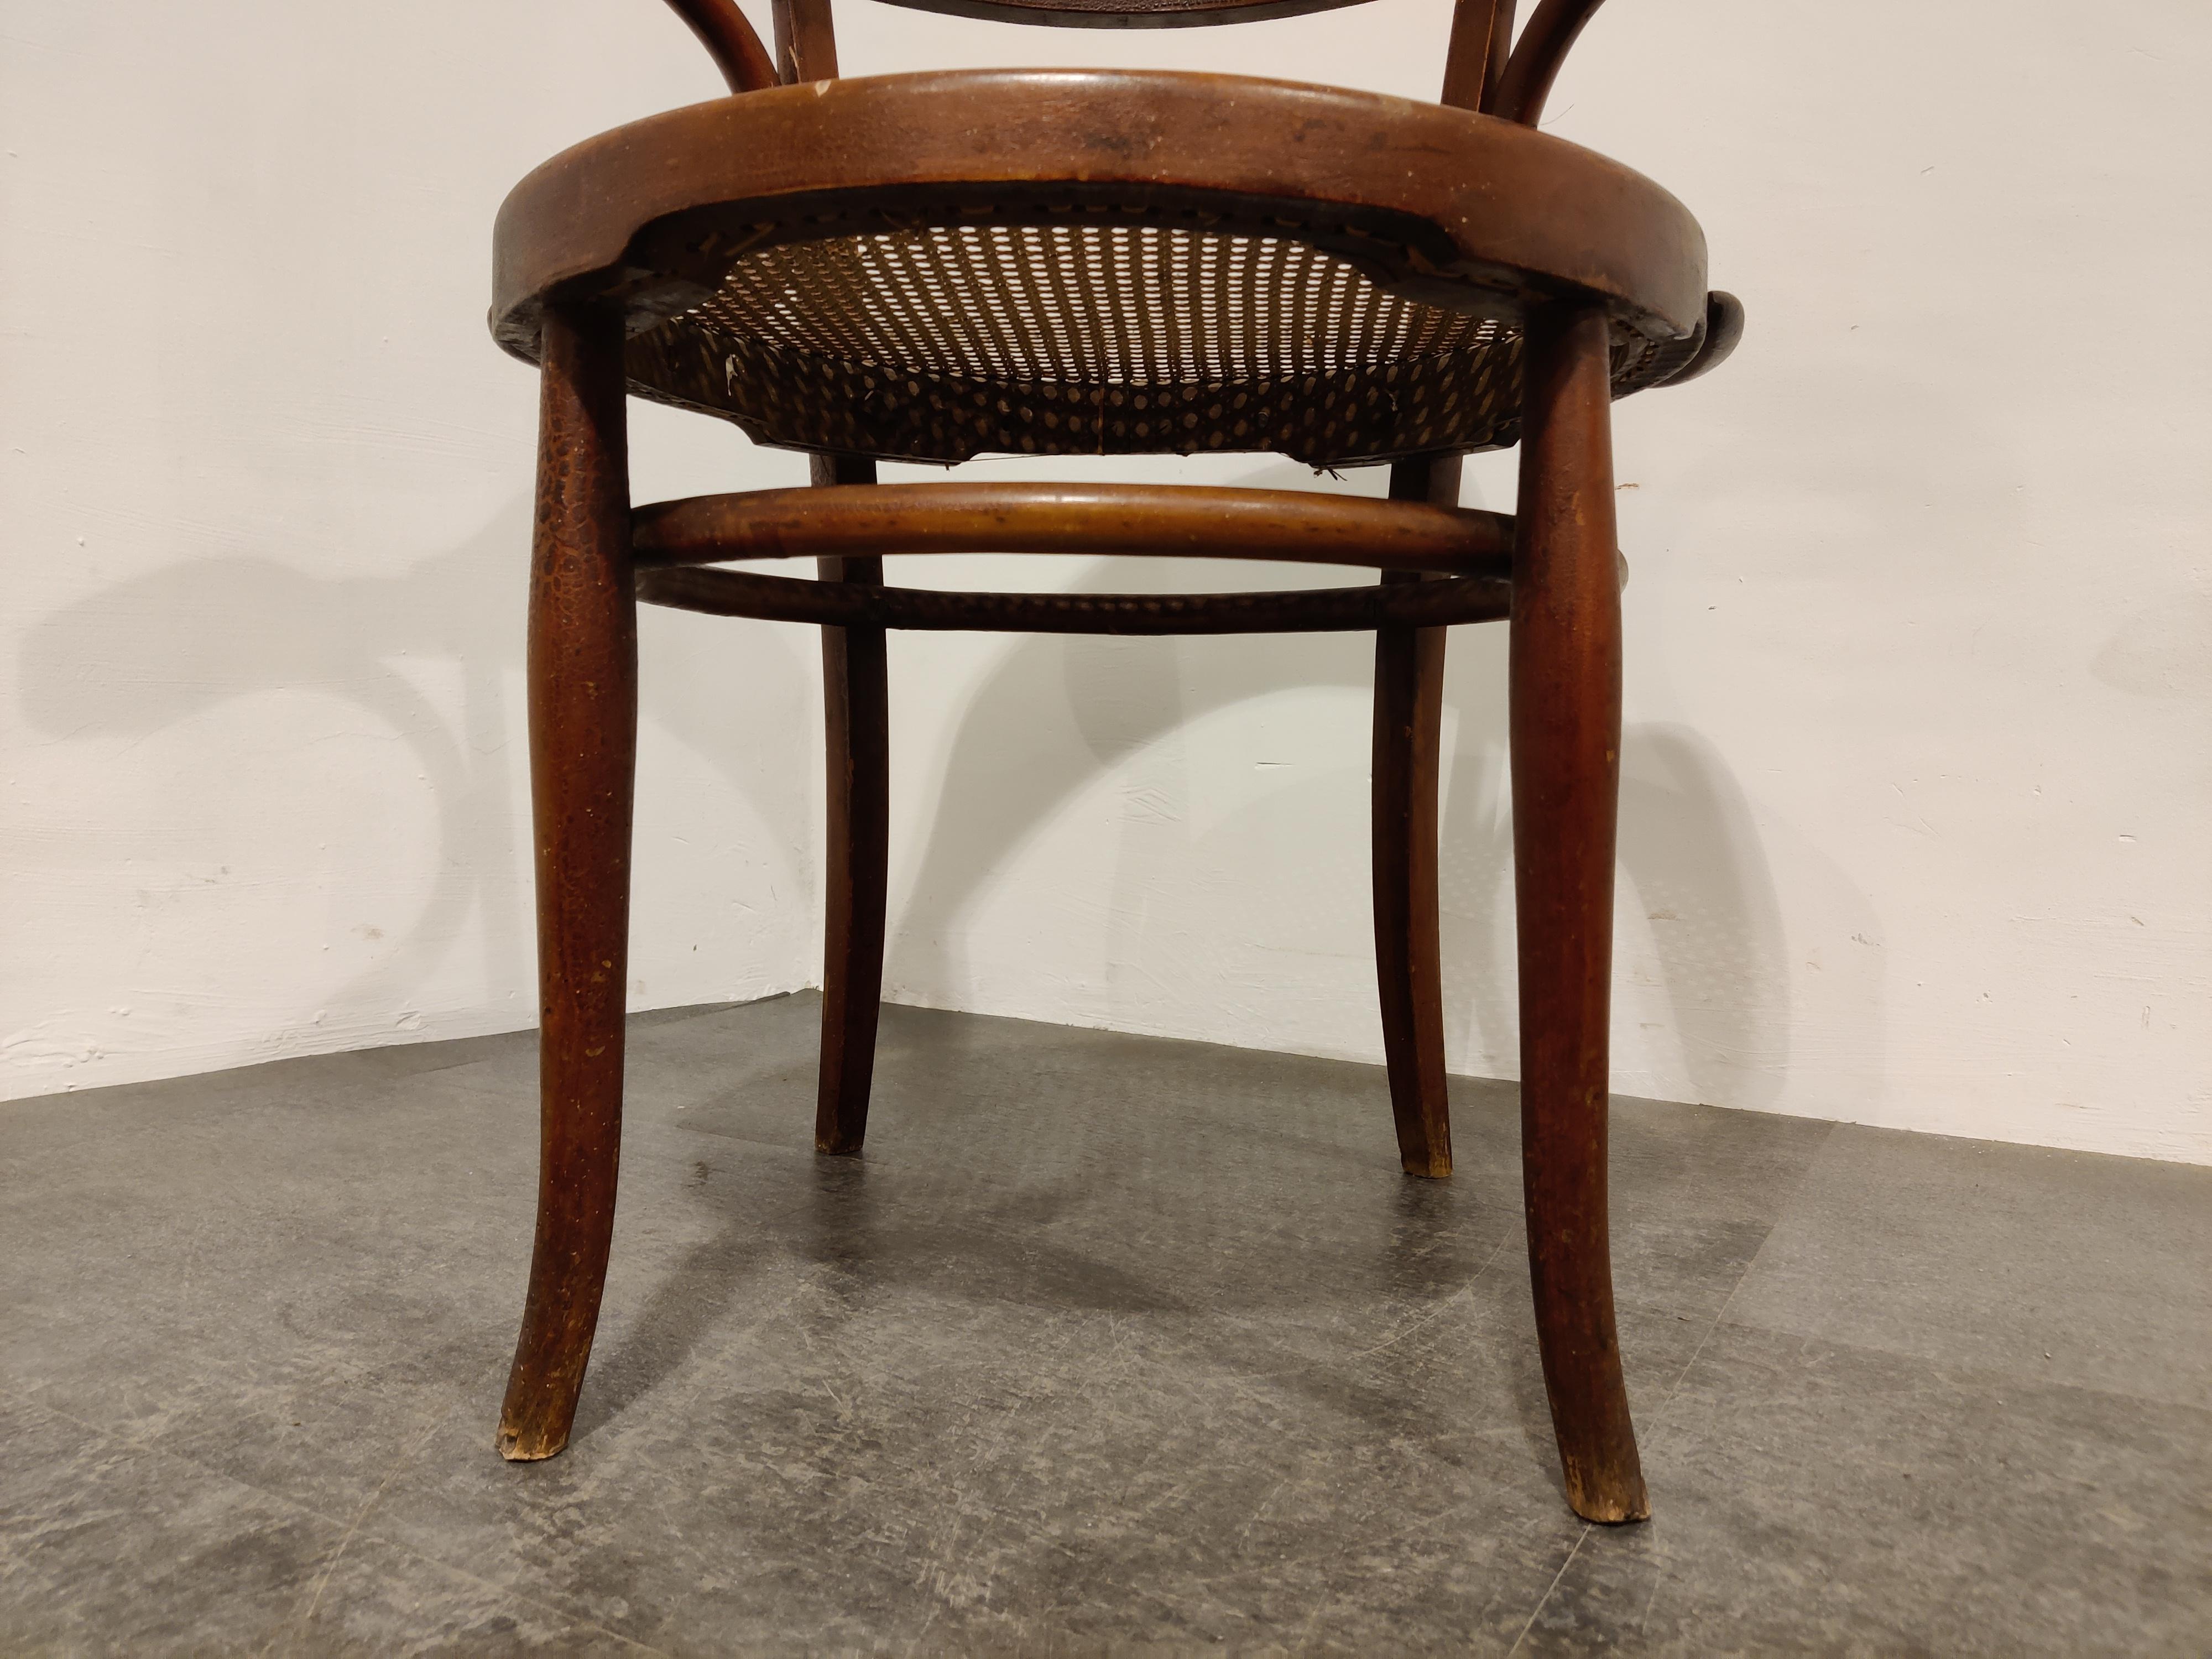 Fauteuil de salle à manger ou chaise bistro en bois courbé brun foncé.

Dans le style de Thonet avec une sangle originale 

Nous la datons du début des années 1950.

Bon état avec usure normale liée à l'âge. 

Dimensions :
Hauteur